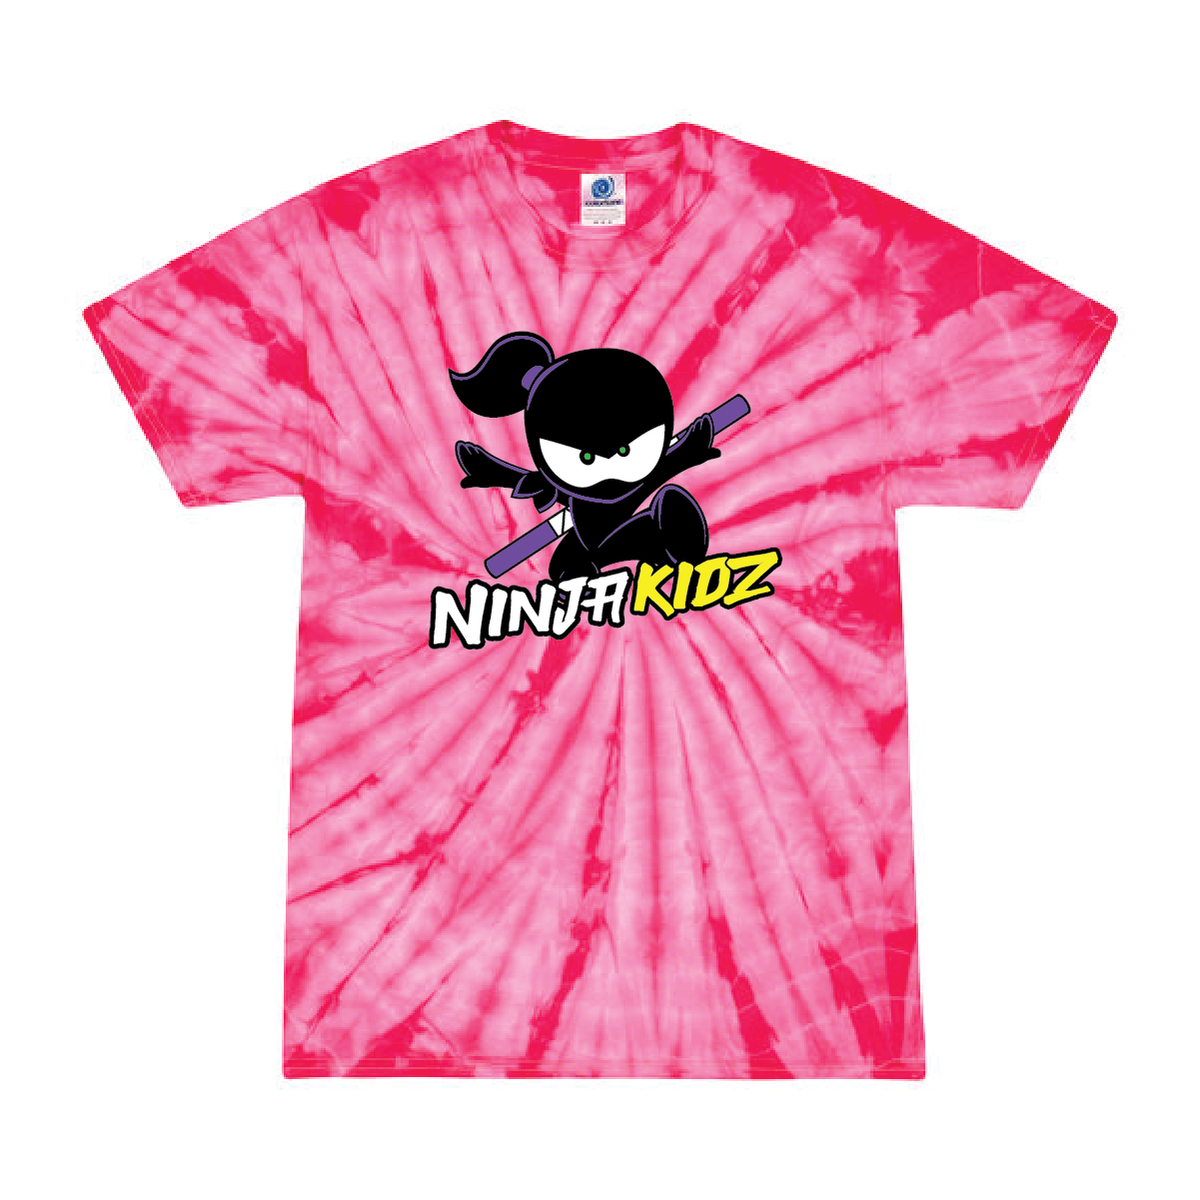 Ninja Kidz White Unisex Kids T-shirt, Ninja Kidz Kids T-shirt for Boys and  Girls